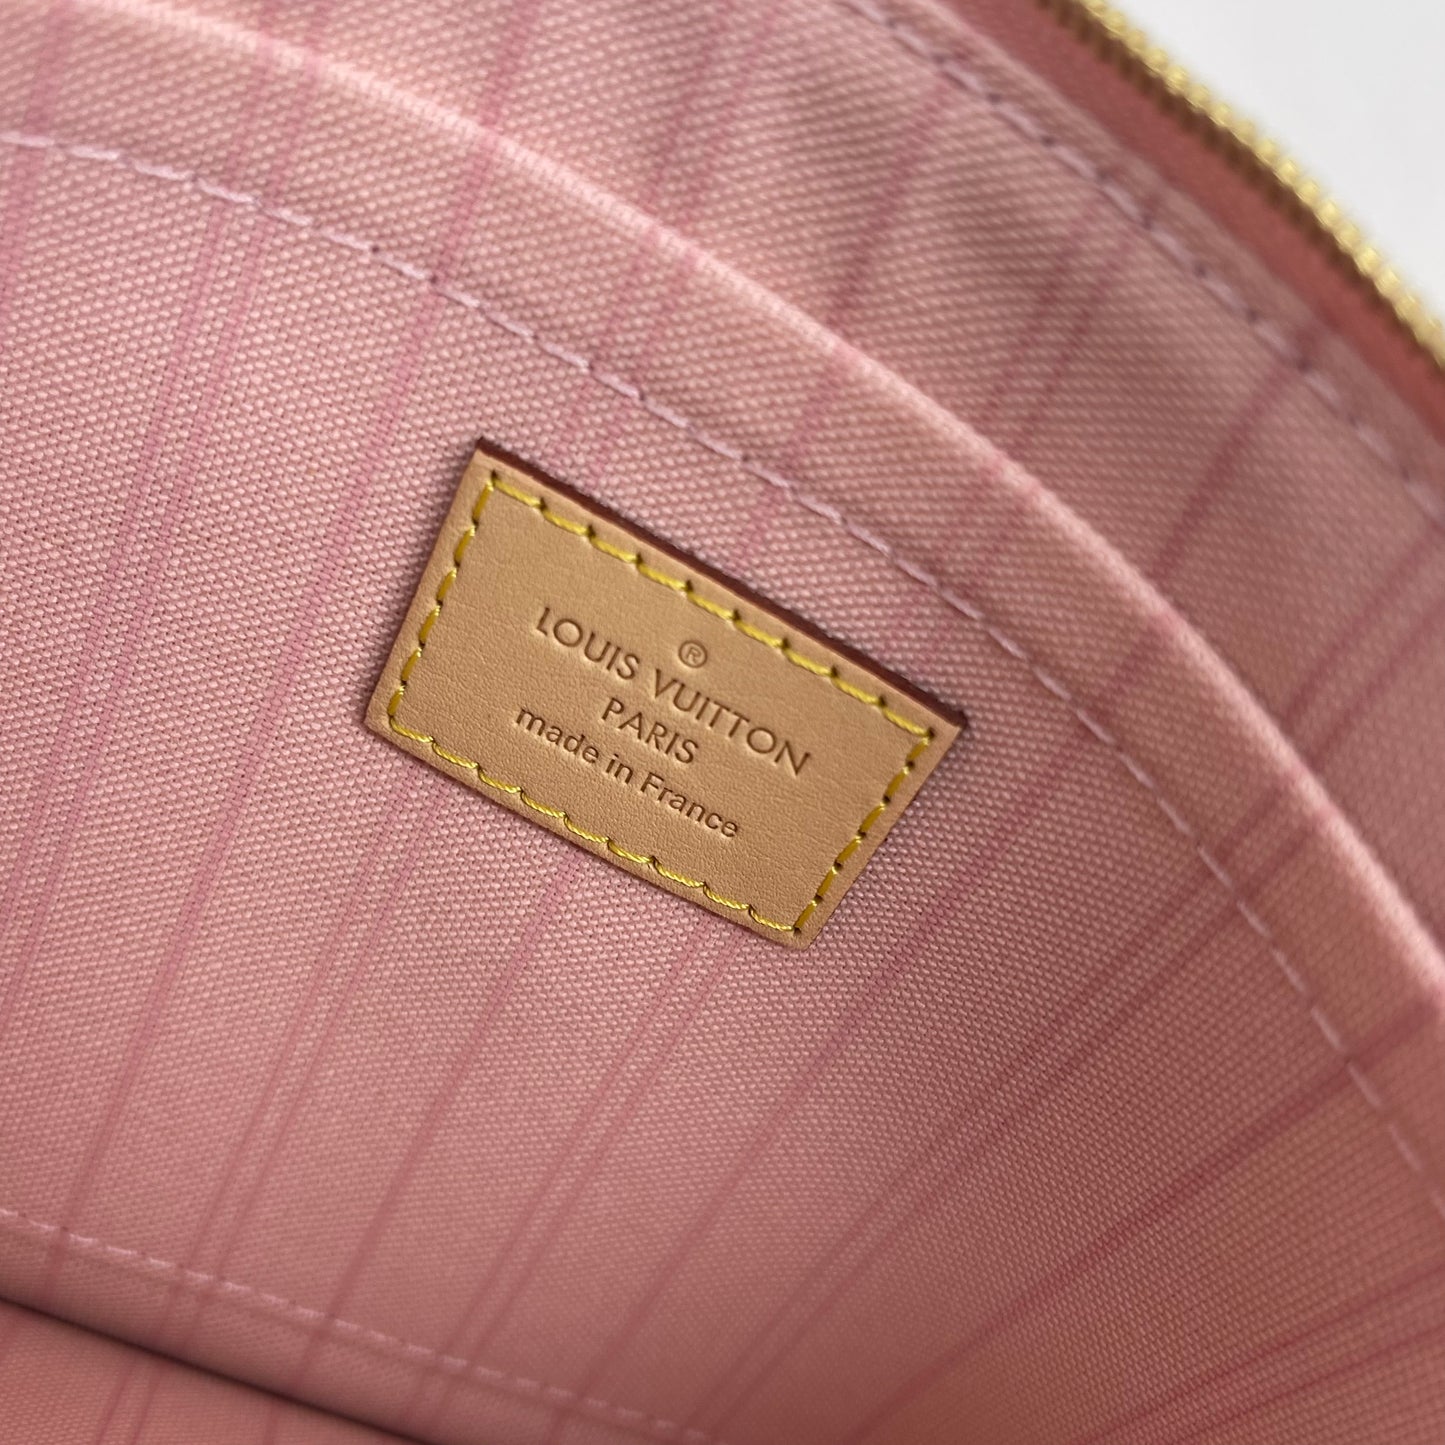 Authentic Louis Vuitton Damier Azure Rose Ballerine Pouch